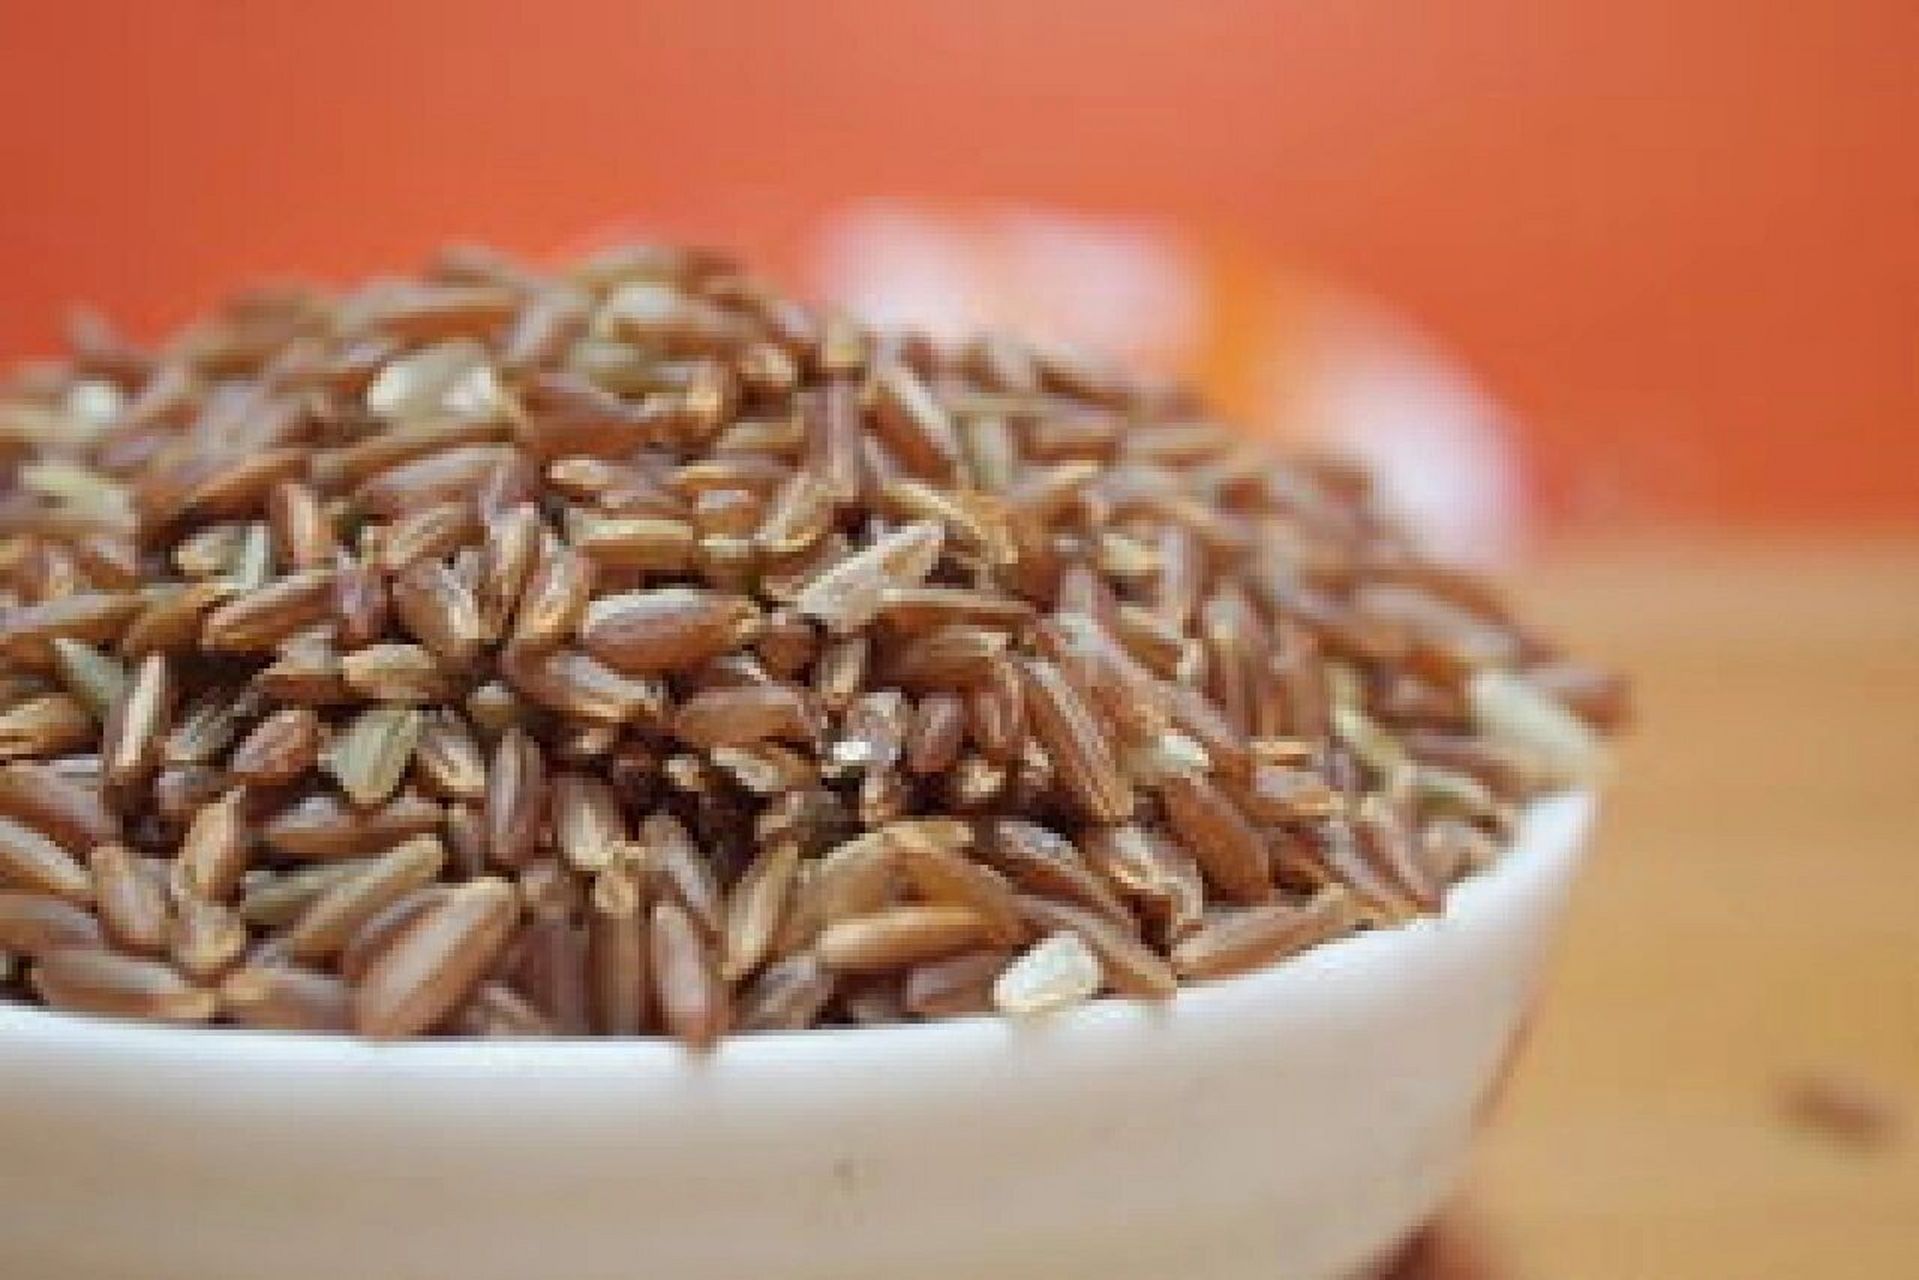 红米的营养价值及功效图片